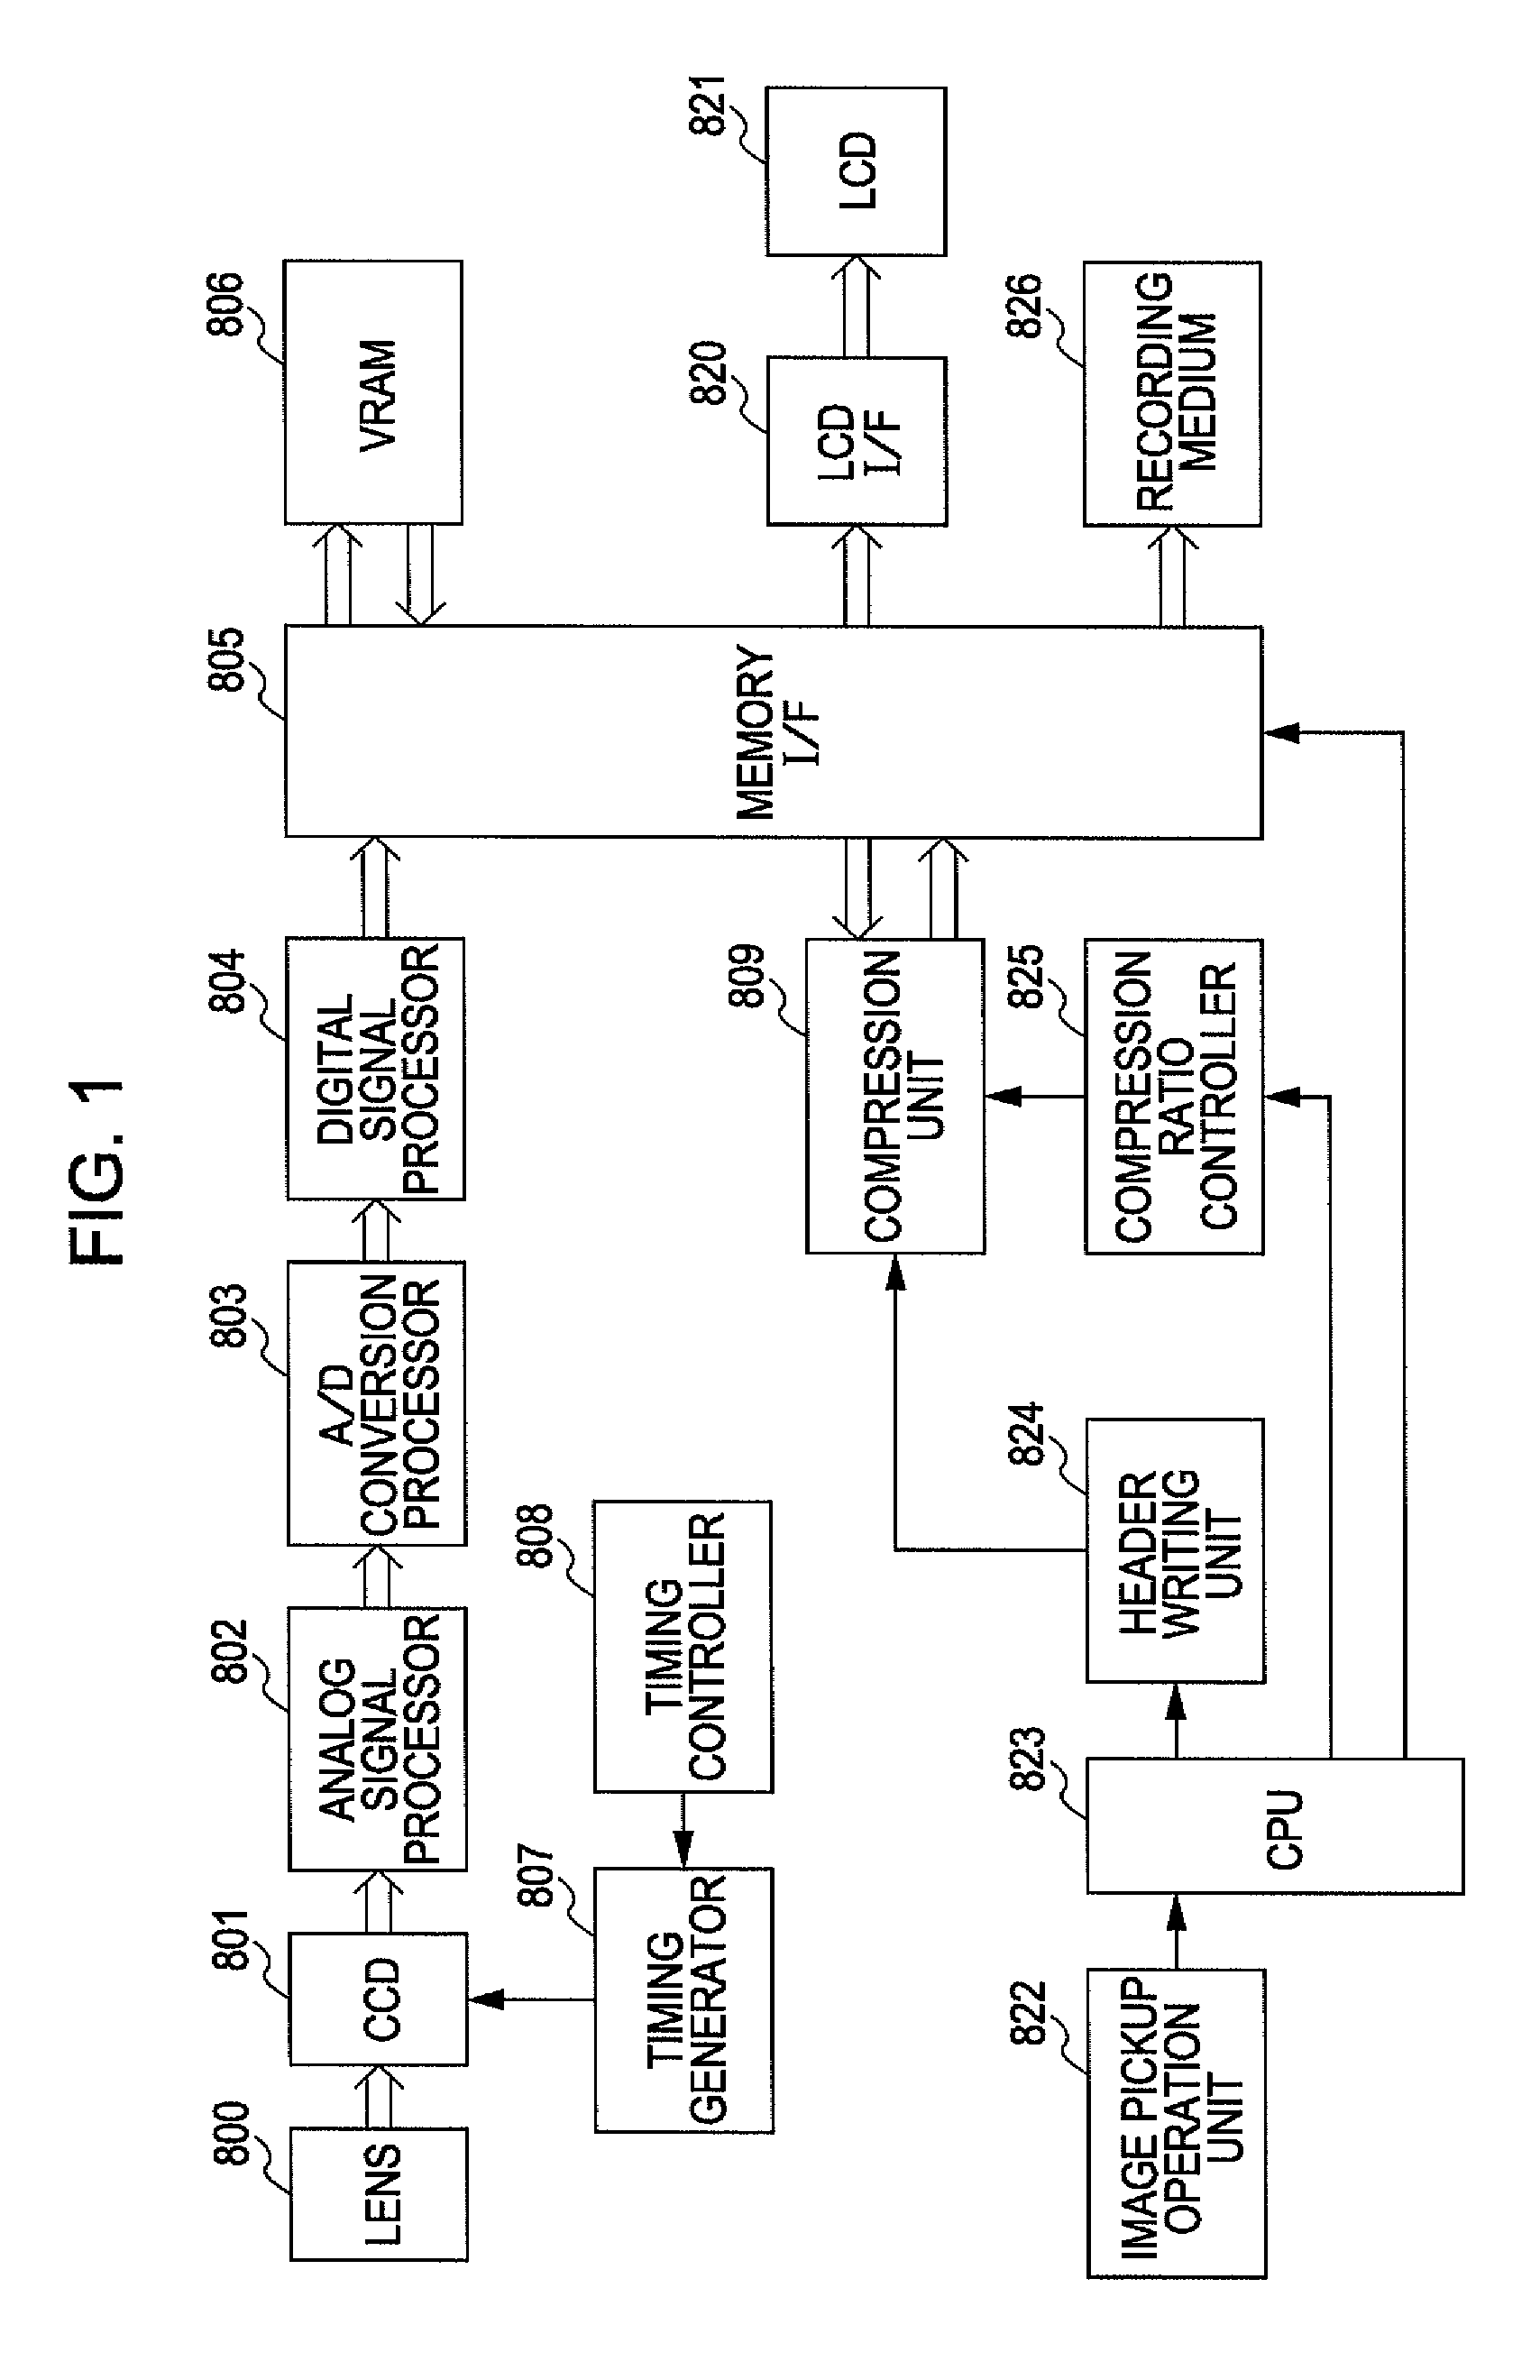 Image pickup apparatus and reproducing apparatus